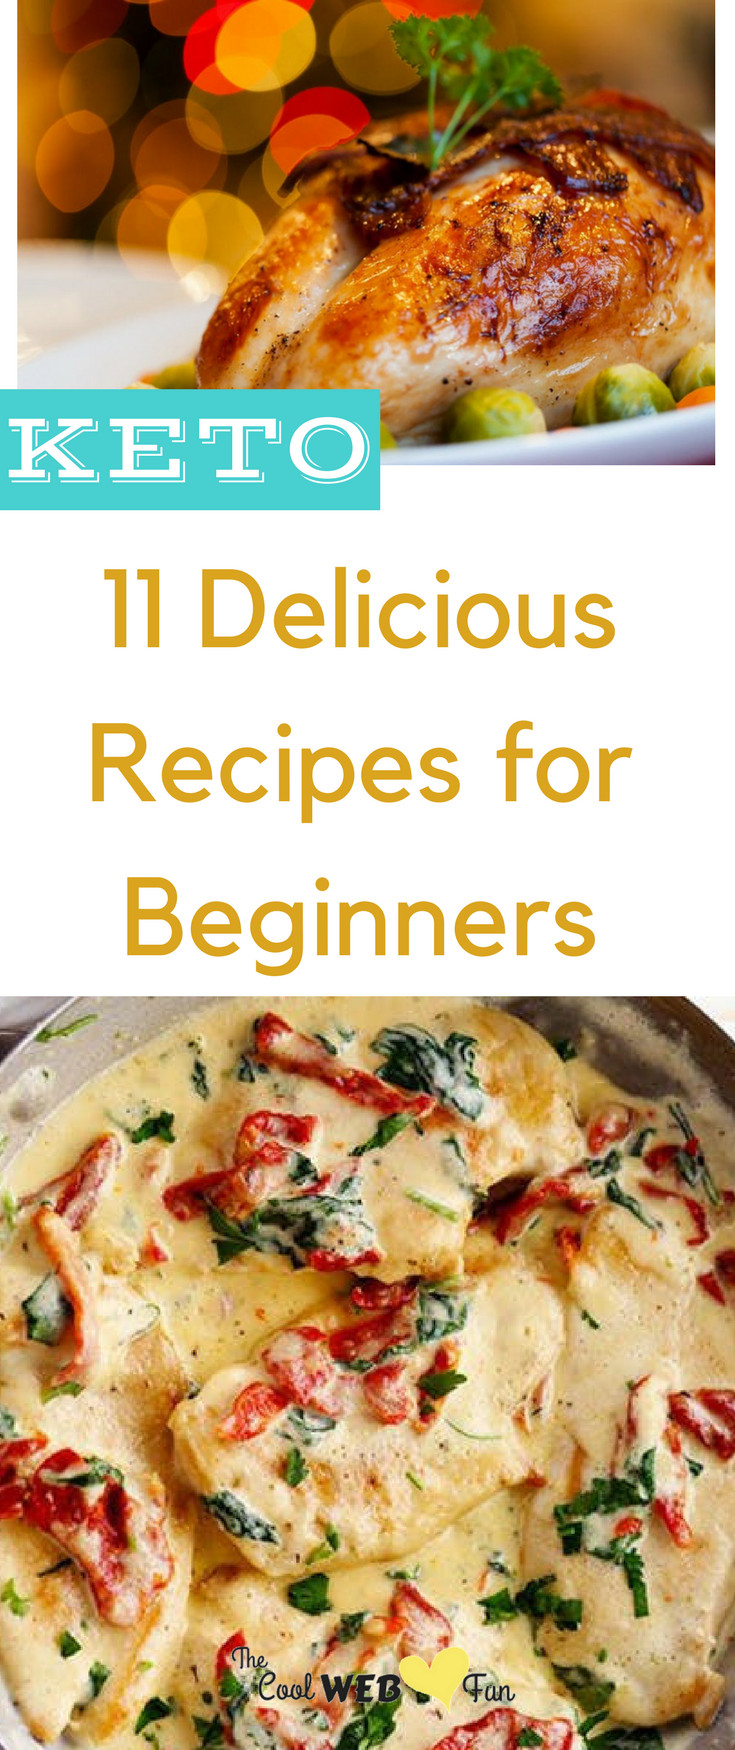 Keto Diet For Beginners Recipe Breakfast
 11 Keto Recipes for Beginners Fitness Bash